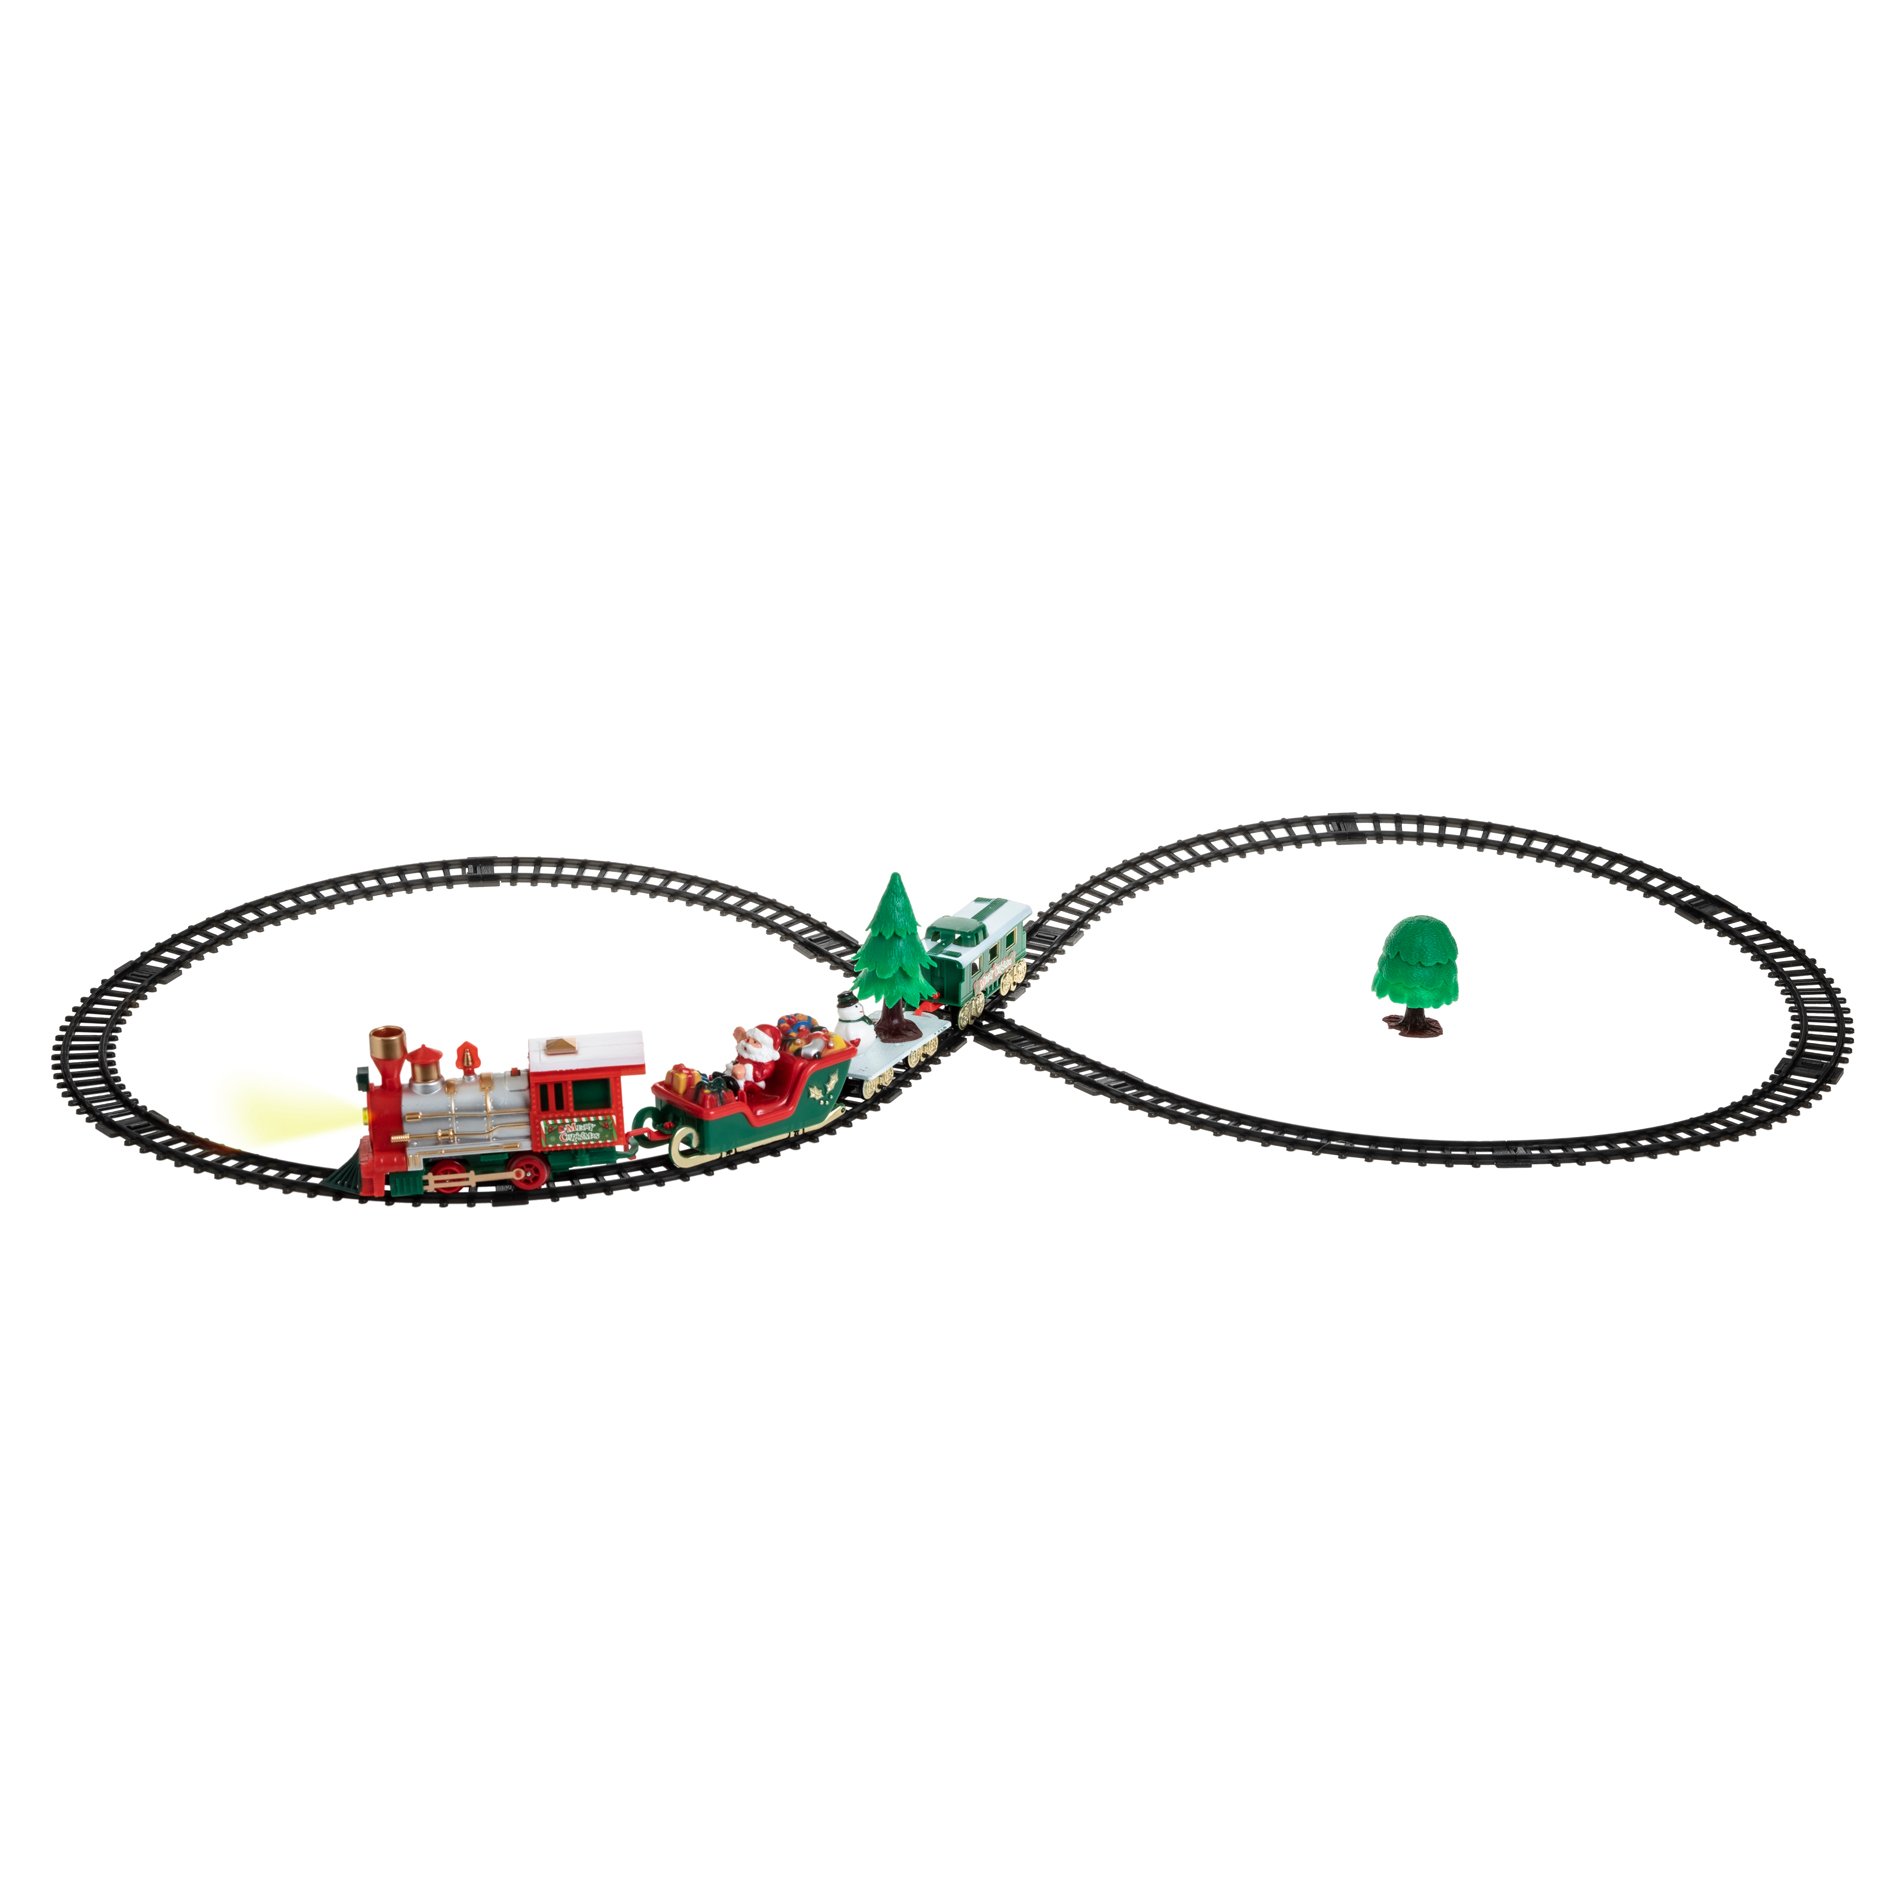 Train électrique pour sapin de Noël - Les accessoires de village - Mi  Emmaüs